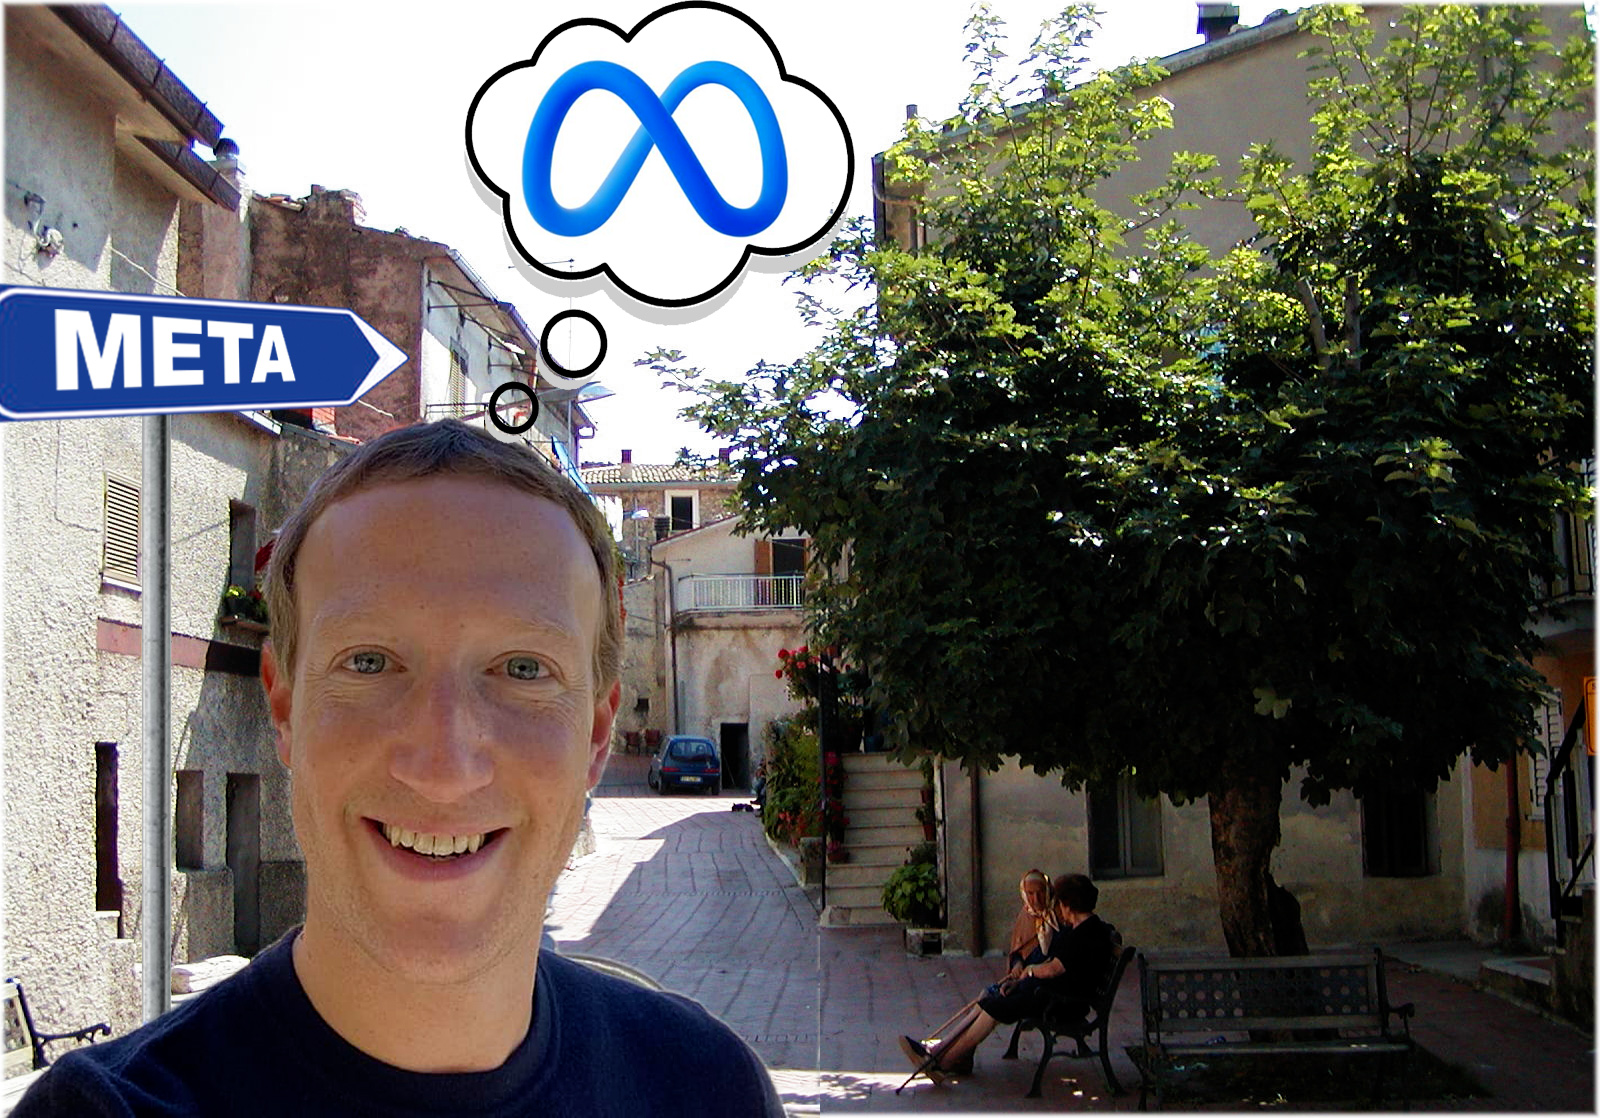 Zuckerberg omaggia l'Abruzzo: Facebook si chiamerà Meta, come il paese marsicano